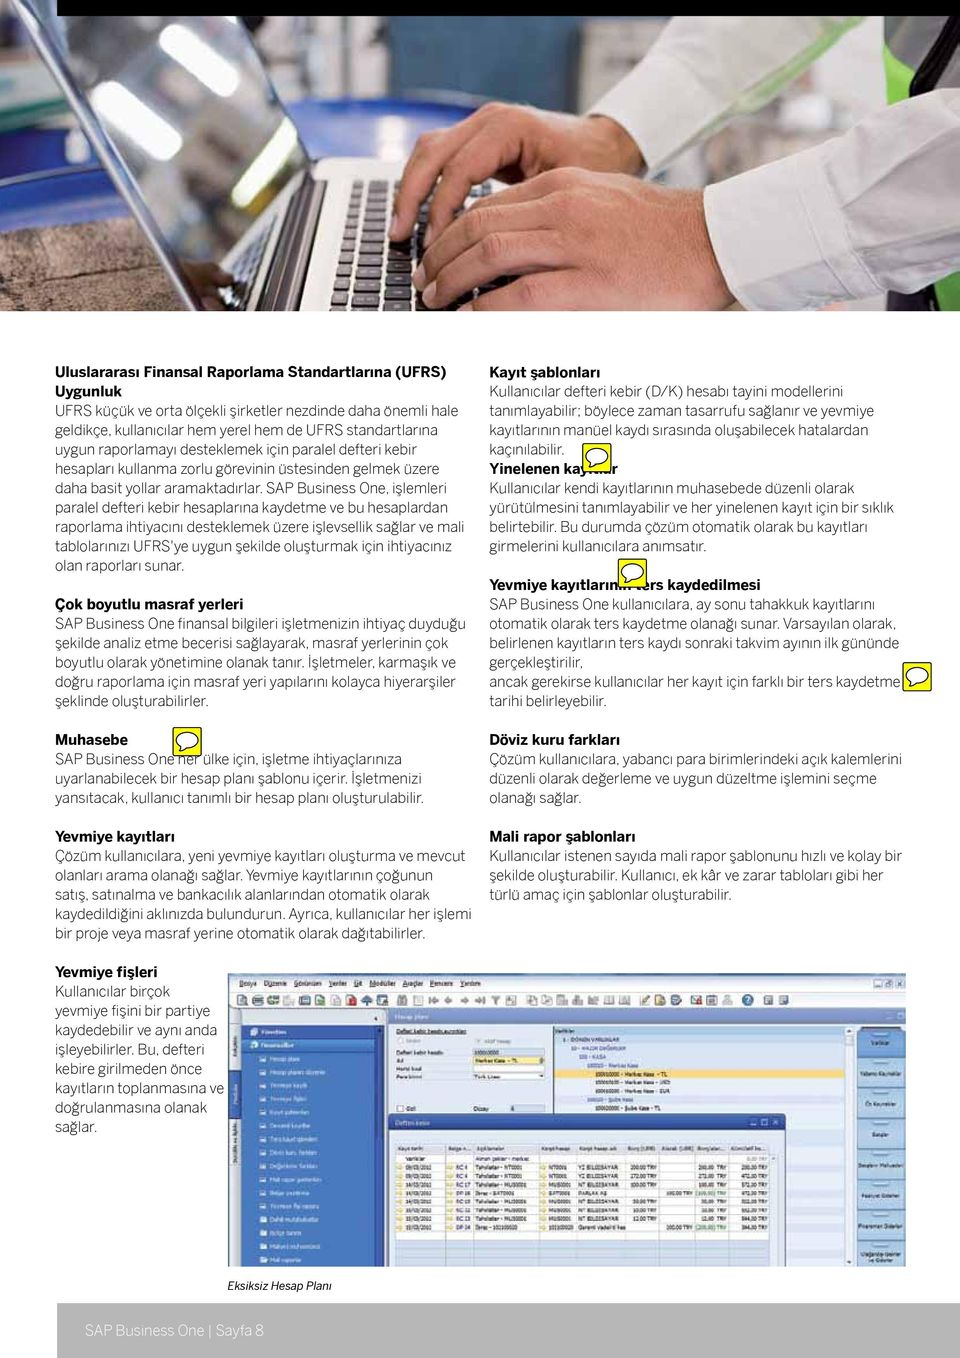 SAP Business One, işlemleri paralel defteri kebir hesaplarına kaydetme ve bu hesaplardan raporlama ihtiyacını desteklemek üzere işlevsellik sağlar ve mali tablolarınızı UFRS'ye uygun şekilde